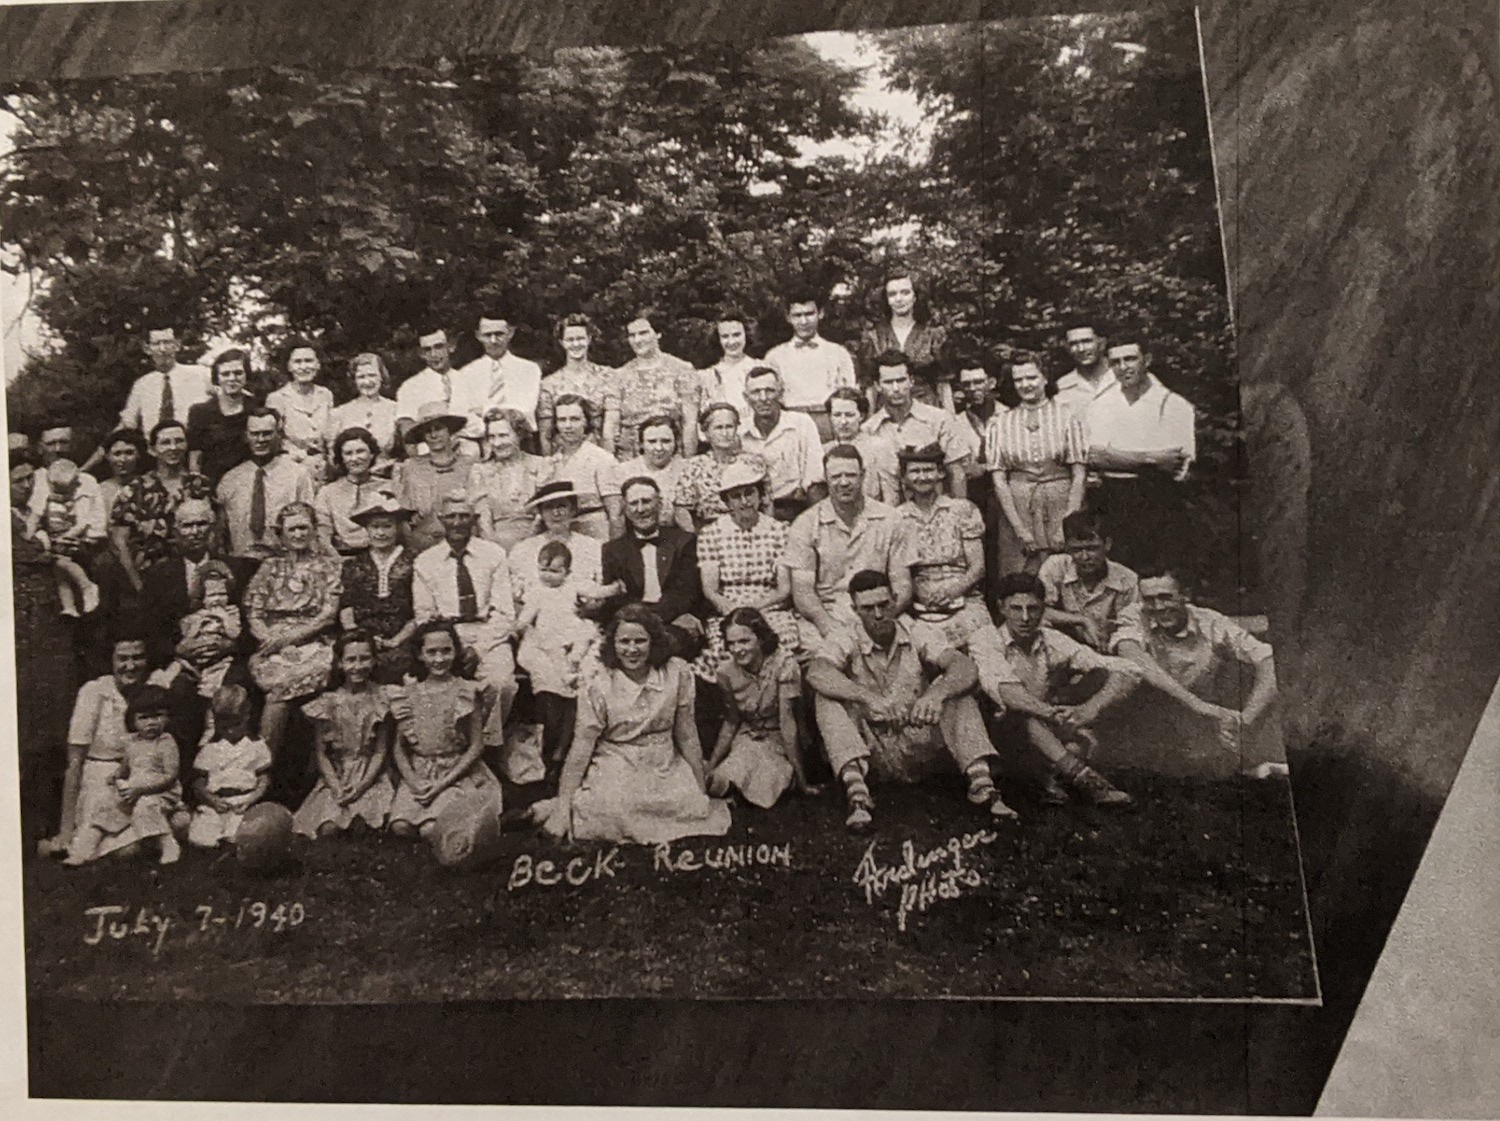 Ảnh chụp chung của đại gia đình nhà Beck trong dịp gặp gỡ vào khoảng năm 1940. (Ảnh do ông Victor Cole cung cấp)